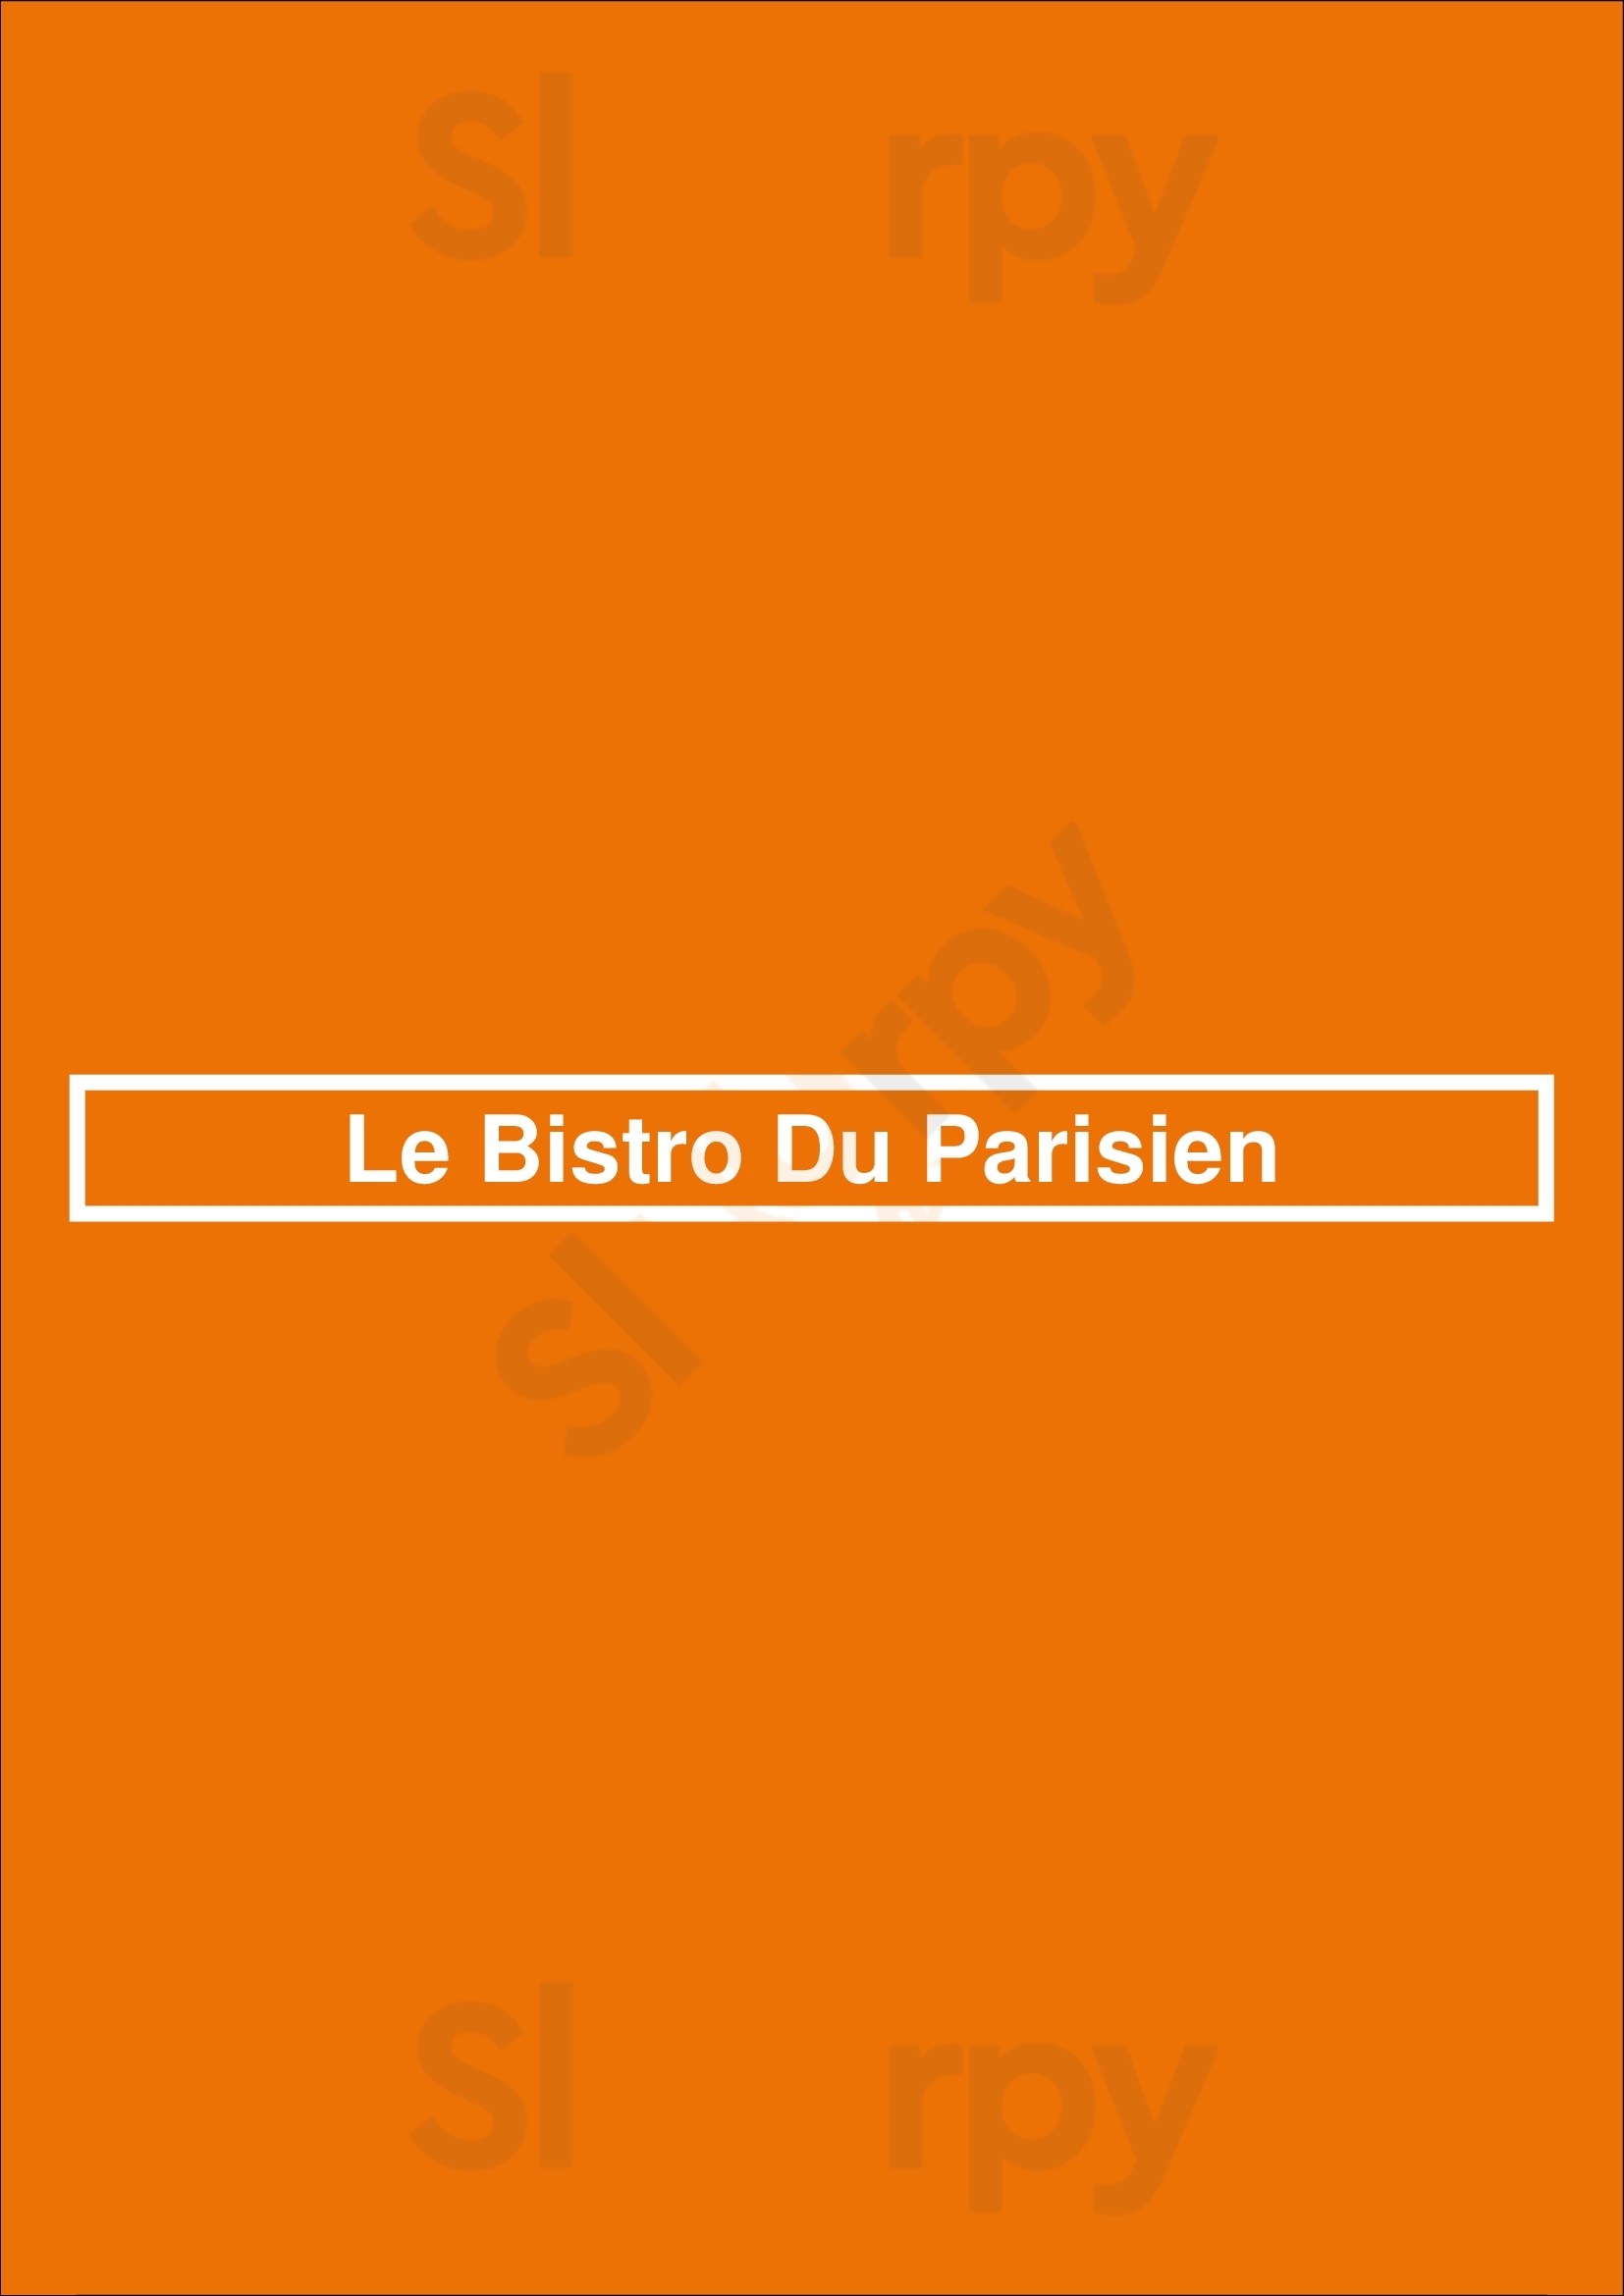 Le Bistro Du Parisien Paris Menu - 1